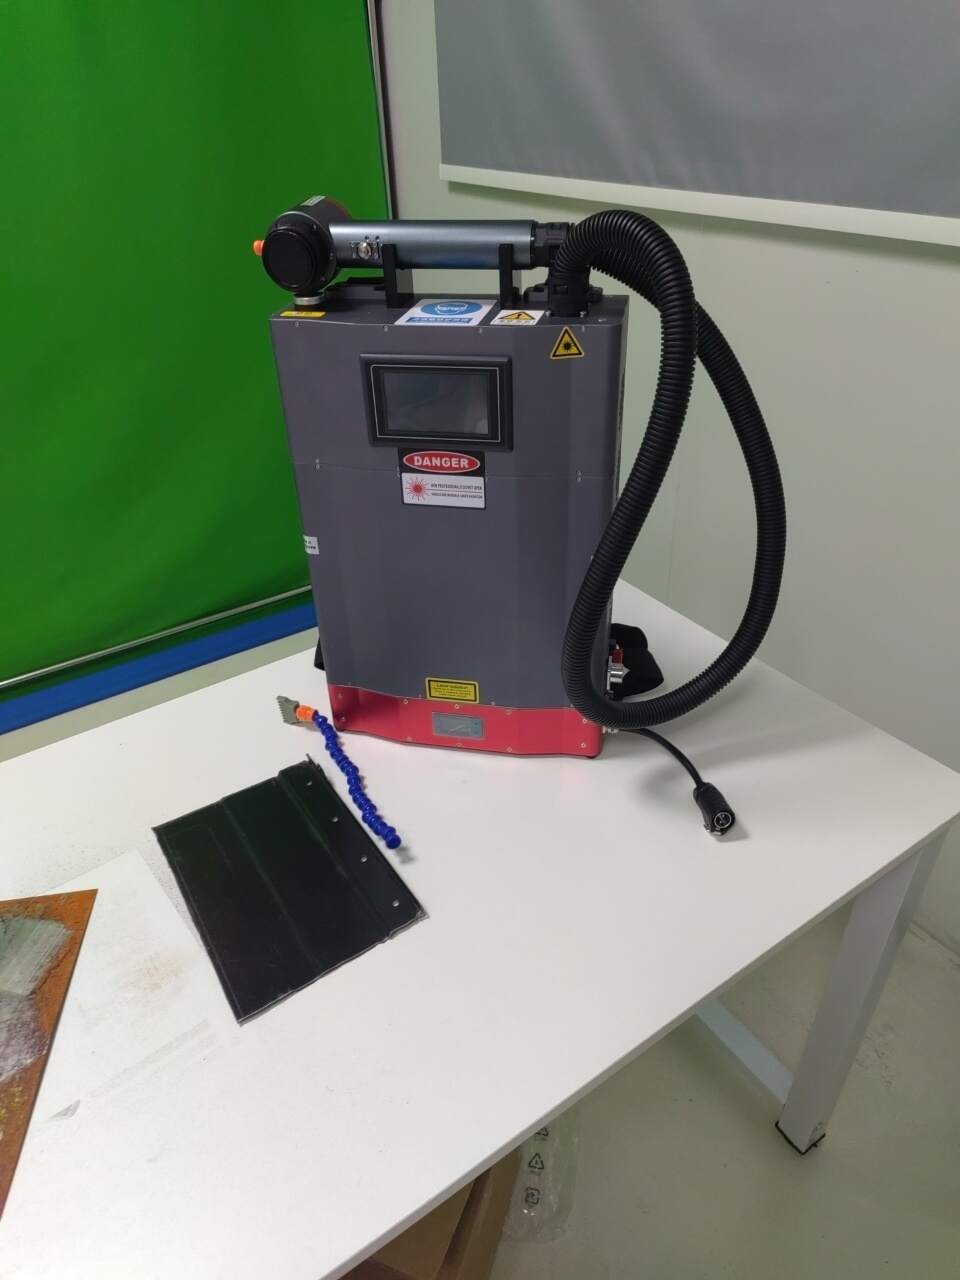 Käeshoitav Mopa laserpuhastusmasin või metallist roosteõlitolm